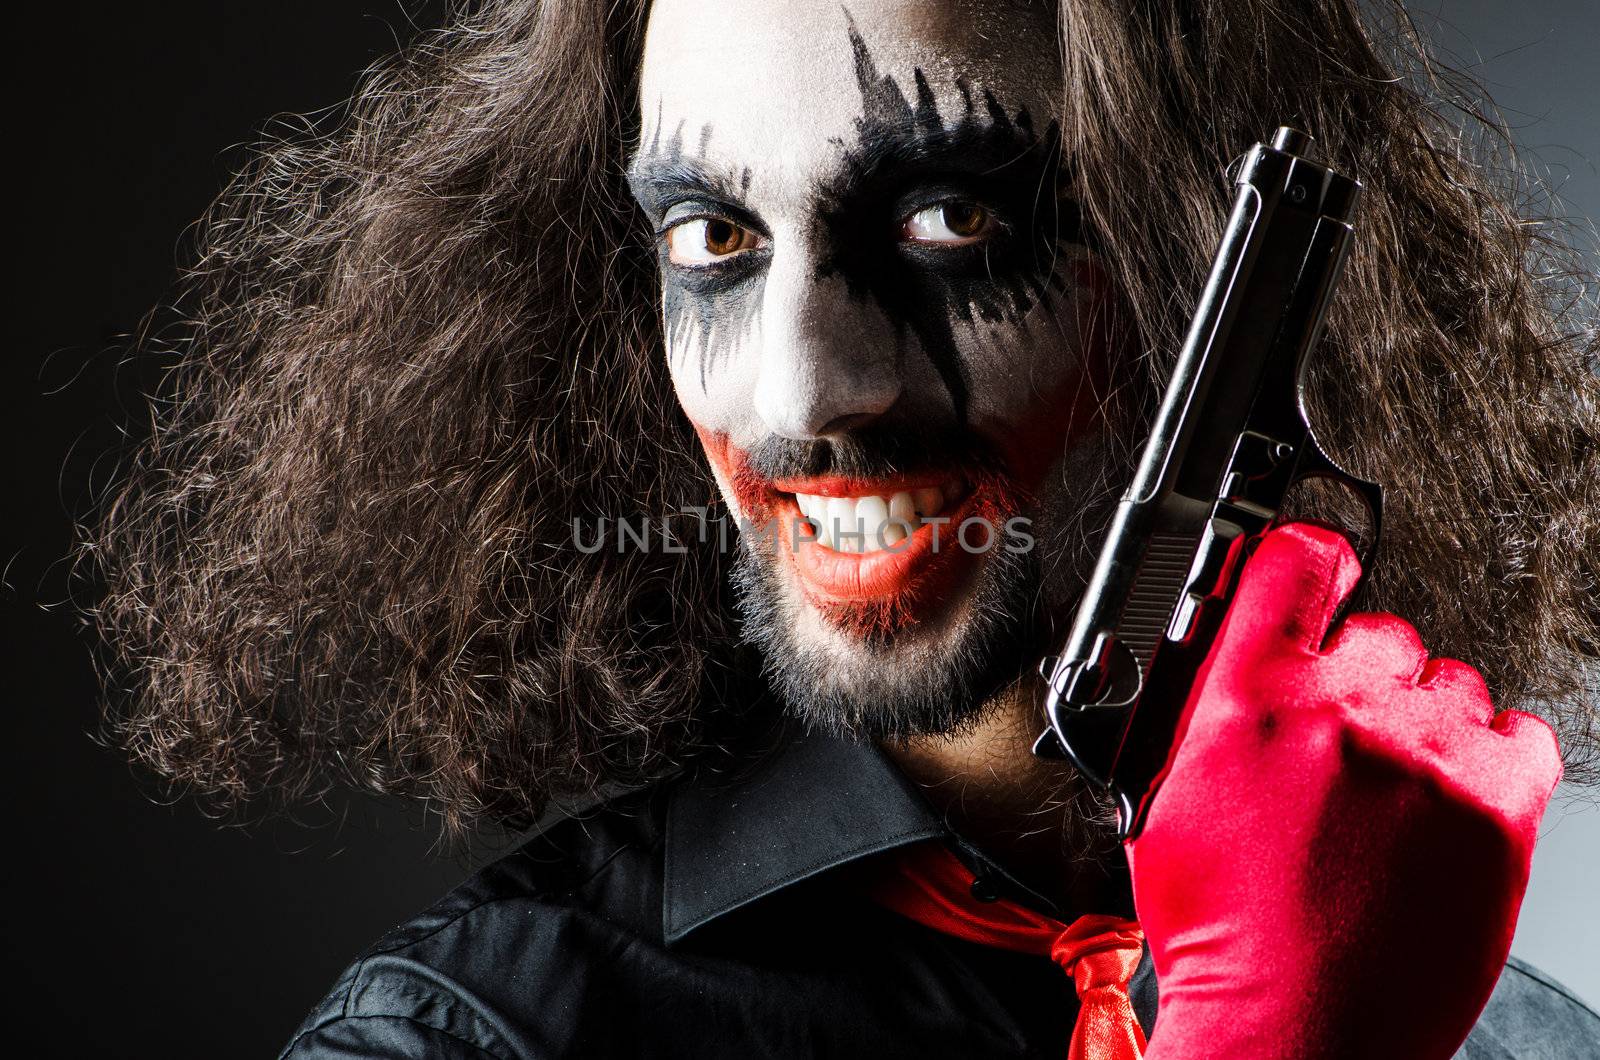 Evil clown with gun in dark room by Elnur